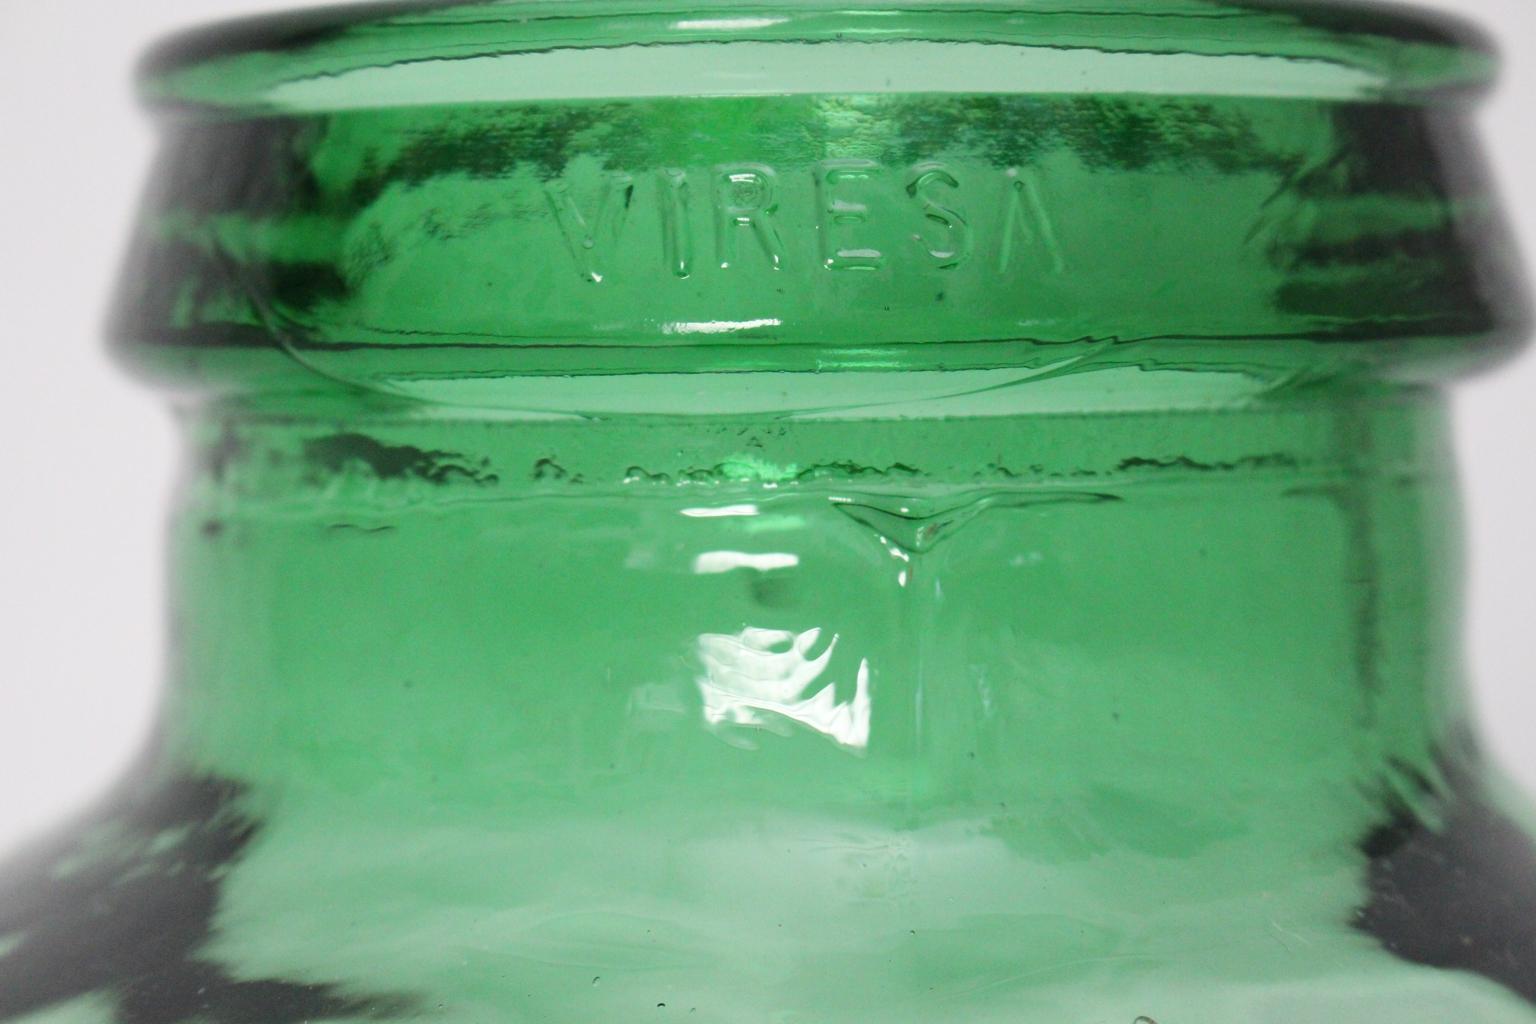 viresa green glass bottle